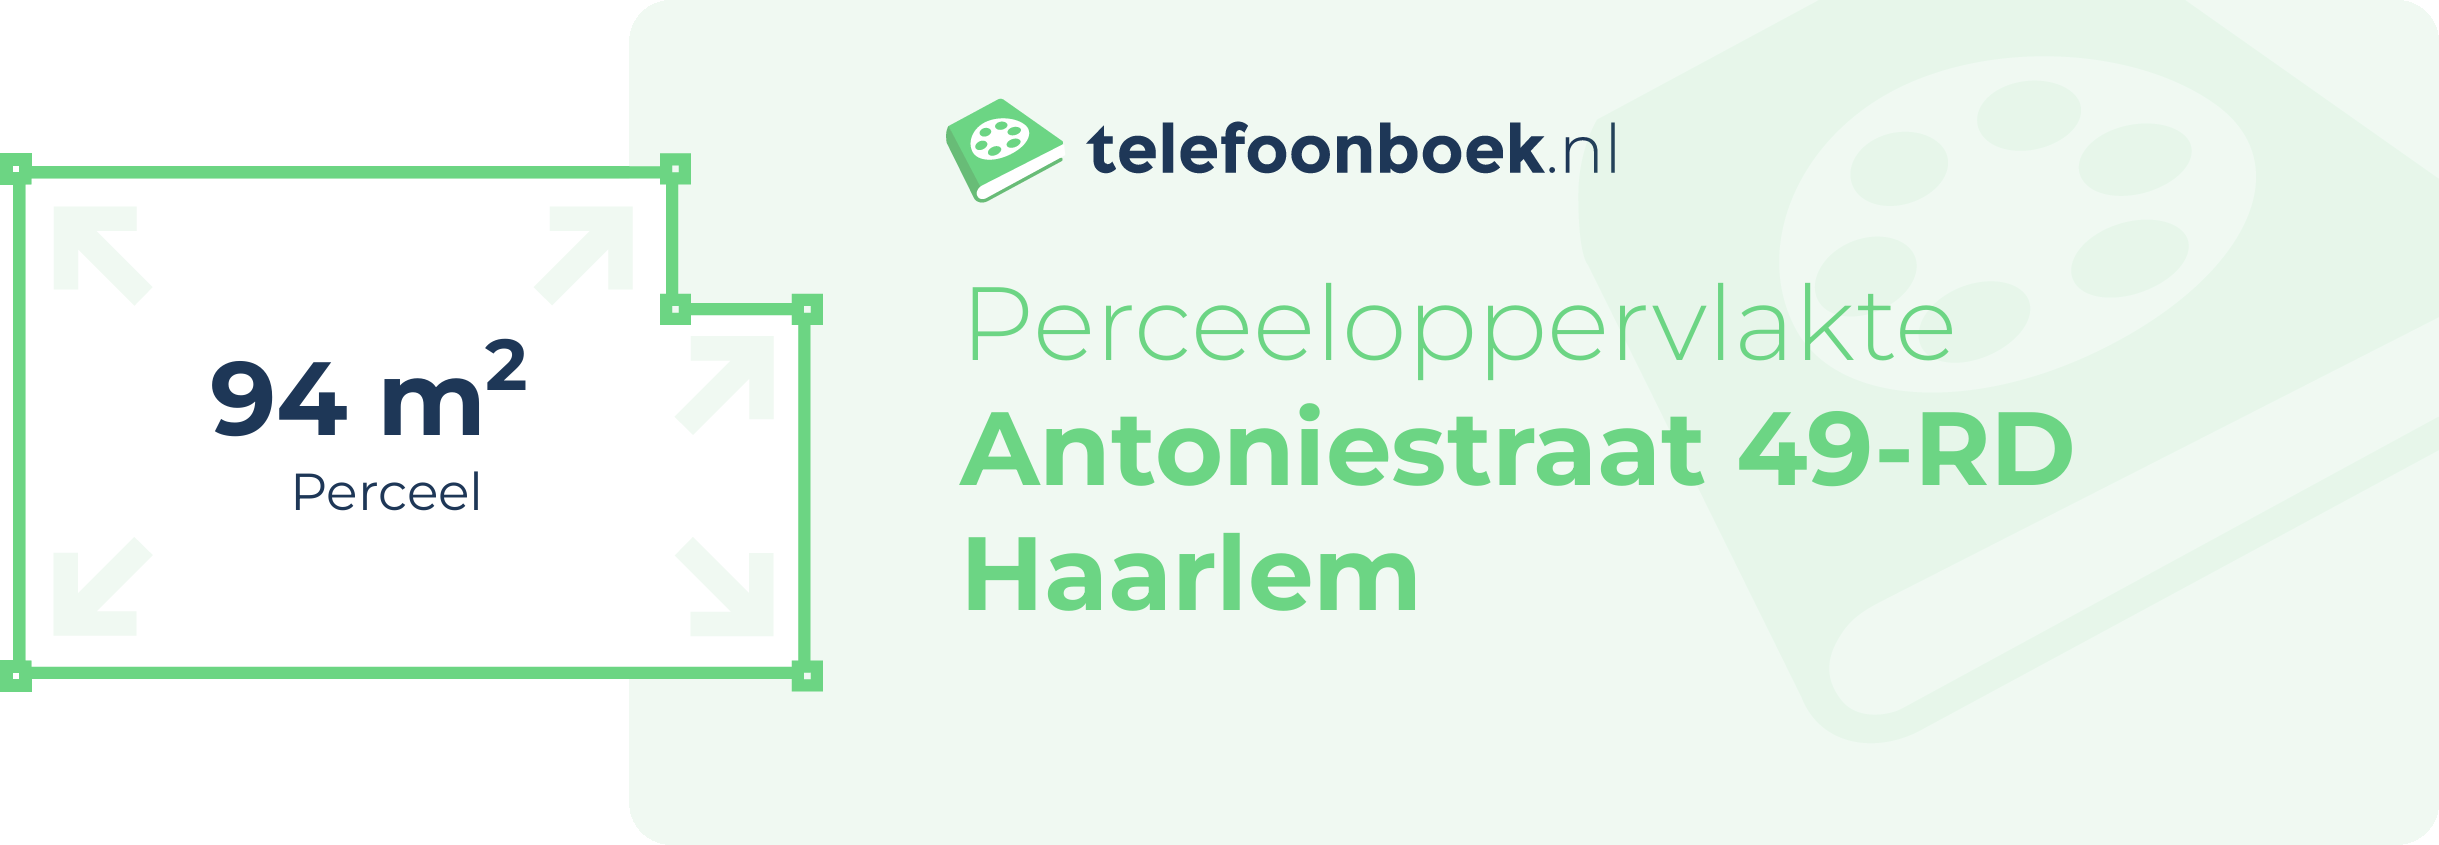 Perceeloppervlakte Antoniestraat 49-RD Haarlem